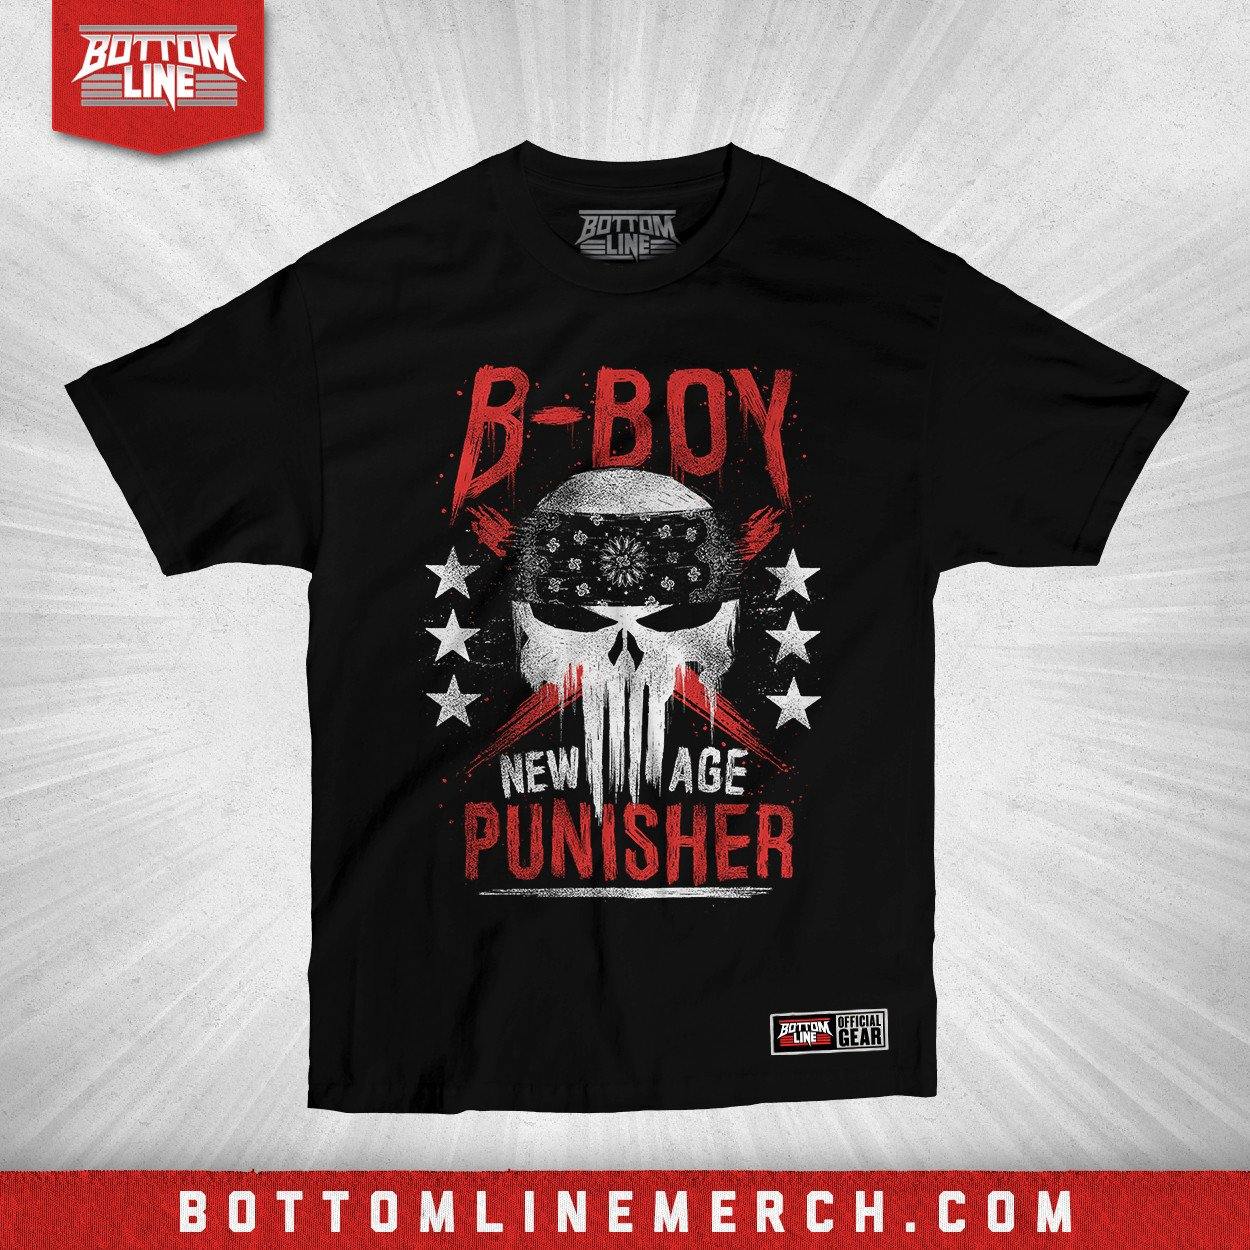 Buy Now – B-Boy "Skull" Shirt – Wrestler & Wrestling Merch – Bottom Line